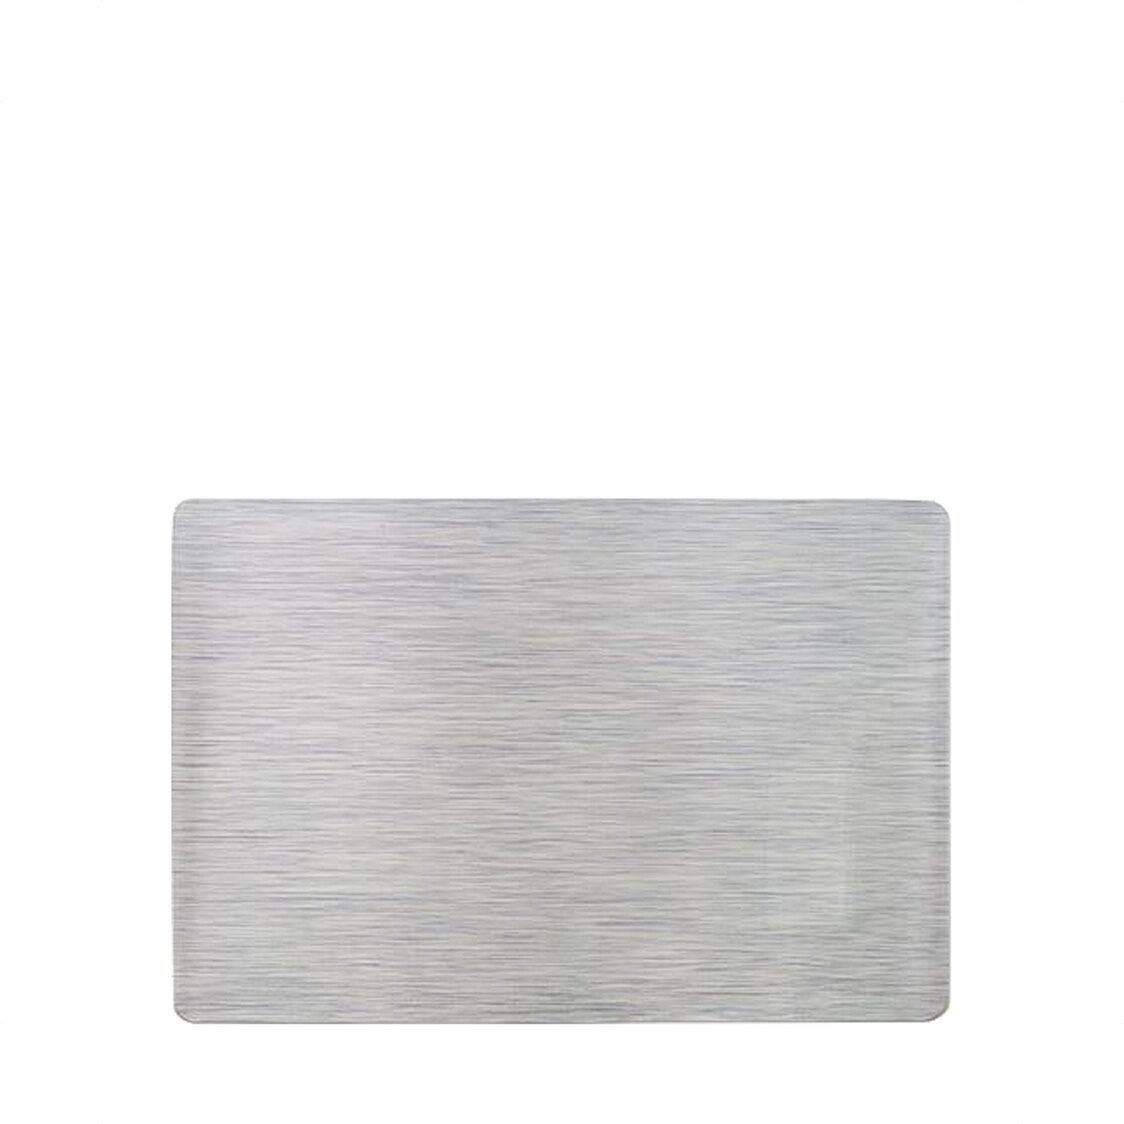 Rapee Metallic Placemat Silver 33x45cm